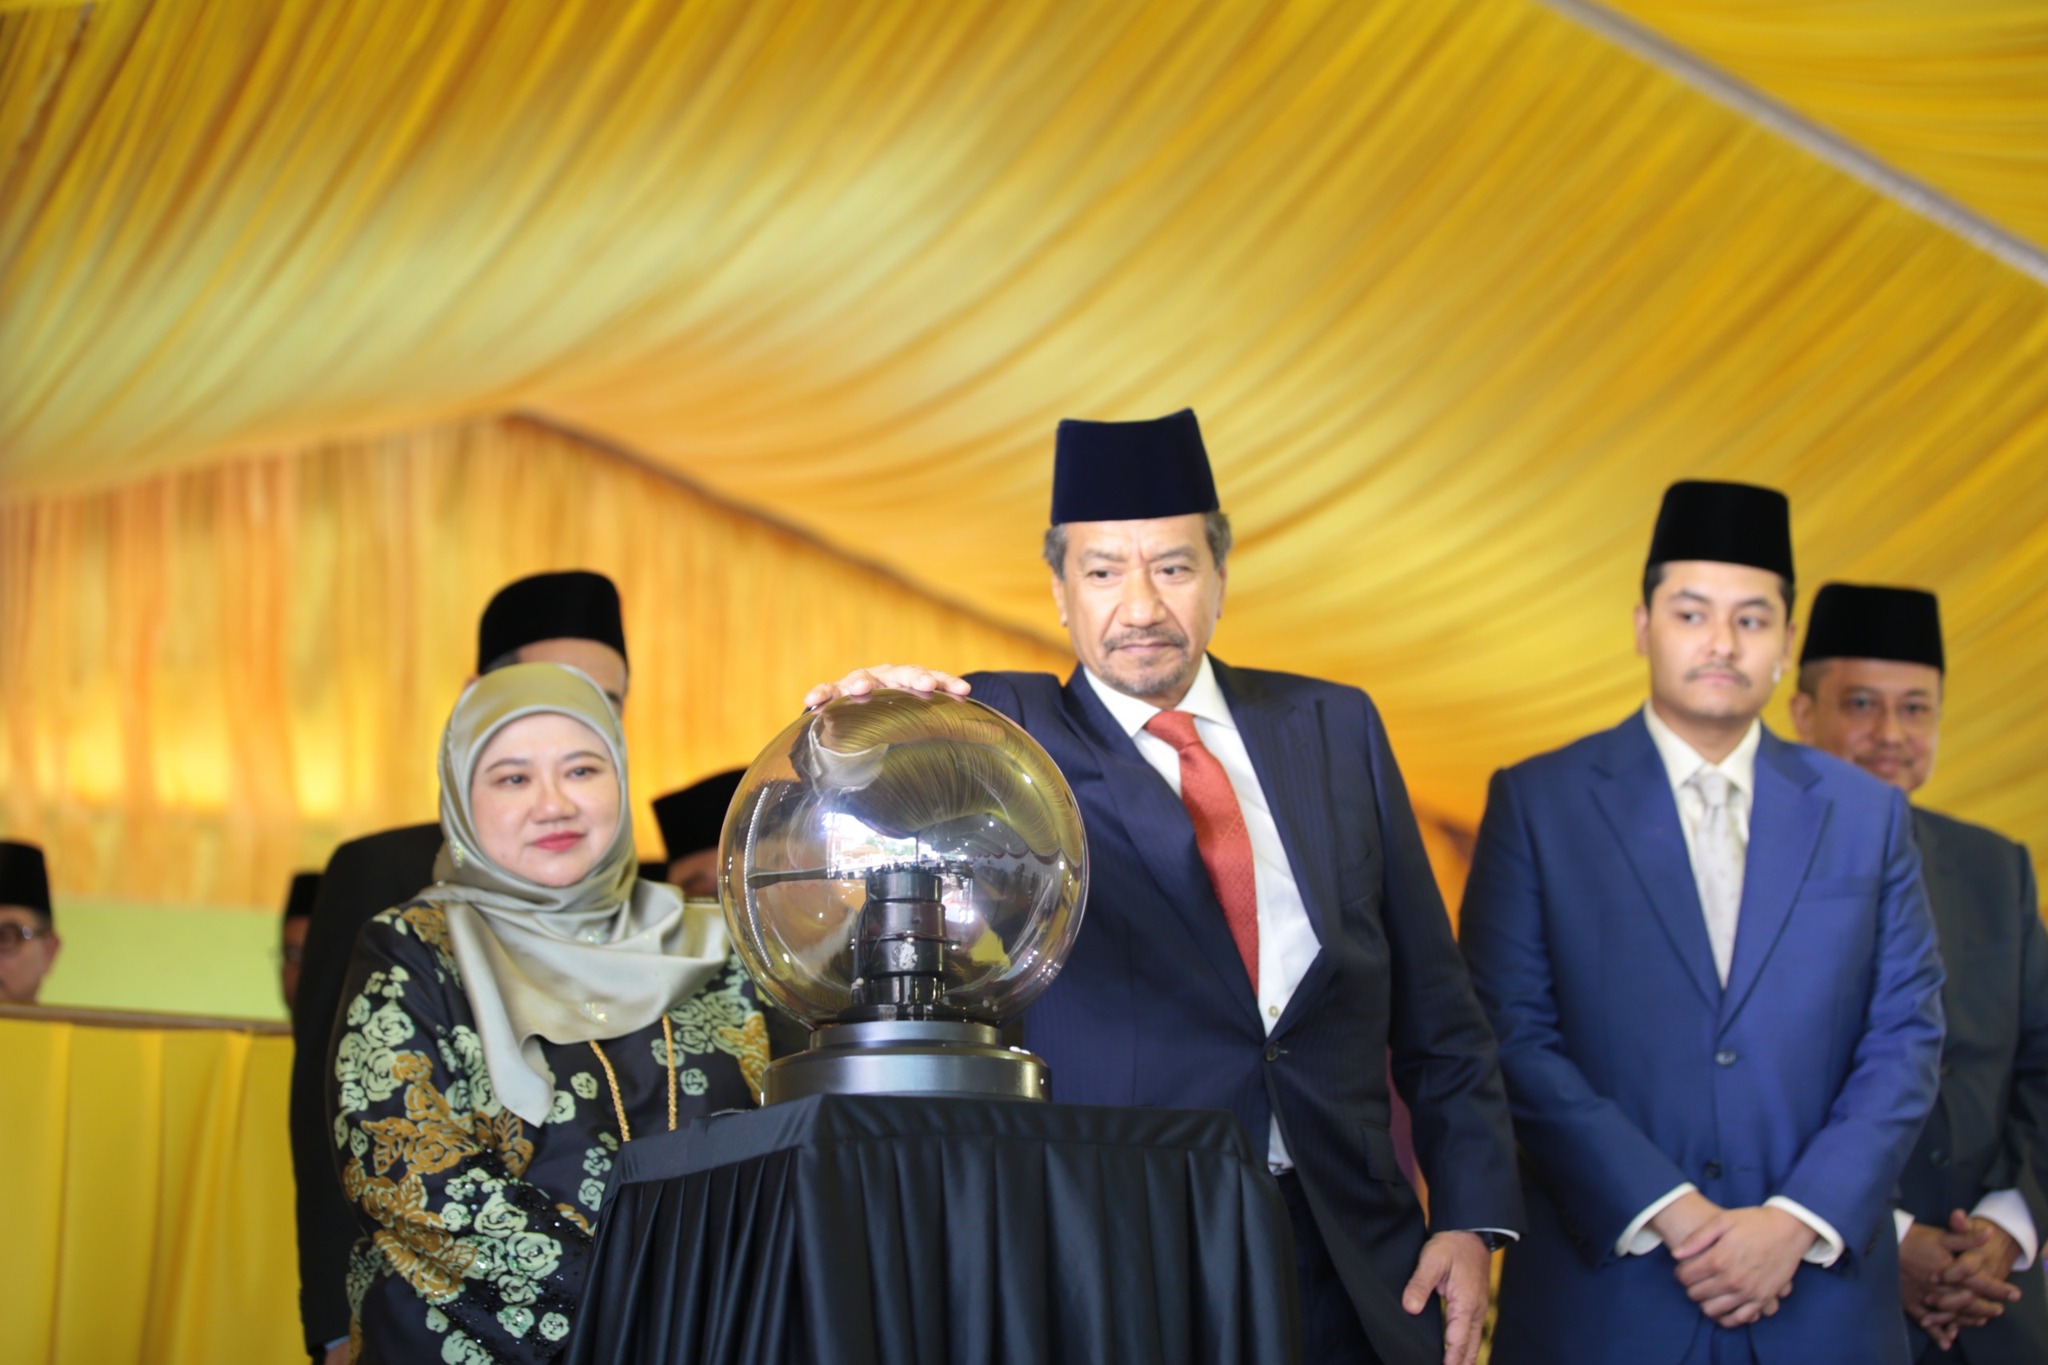 Majlis Perasmian Wisma Audit Negeri Terengganu